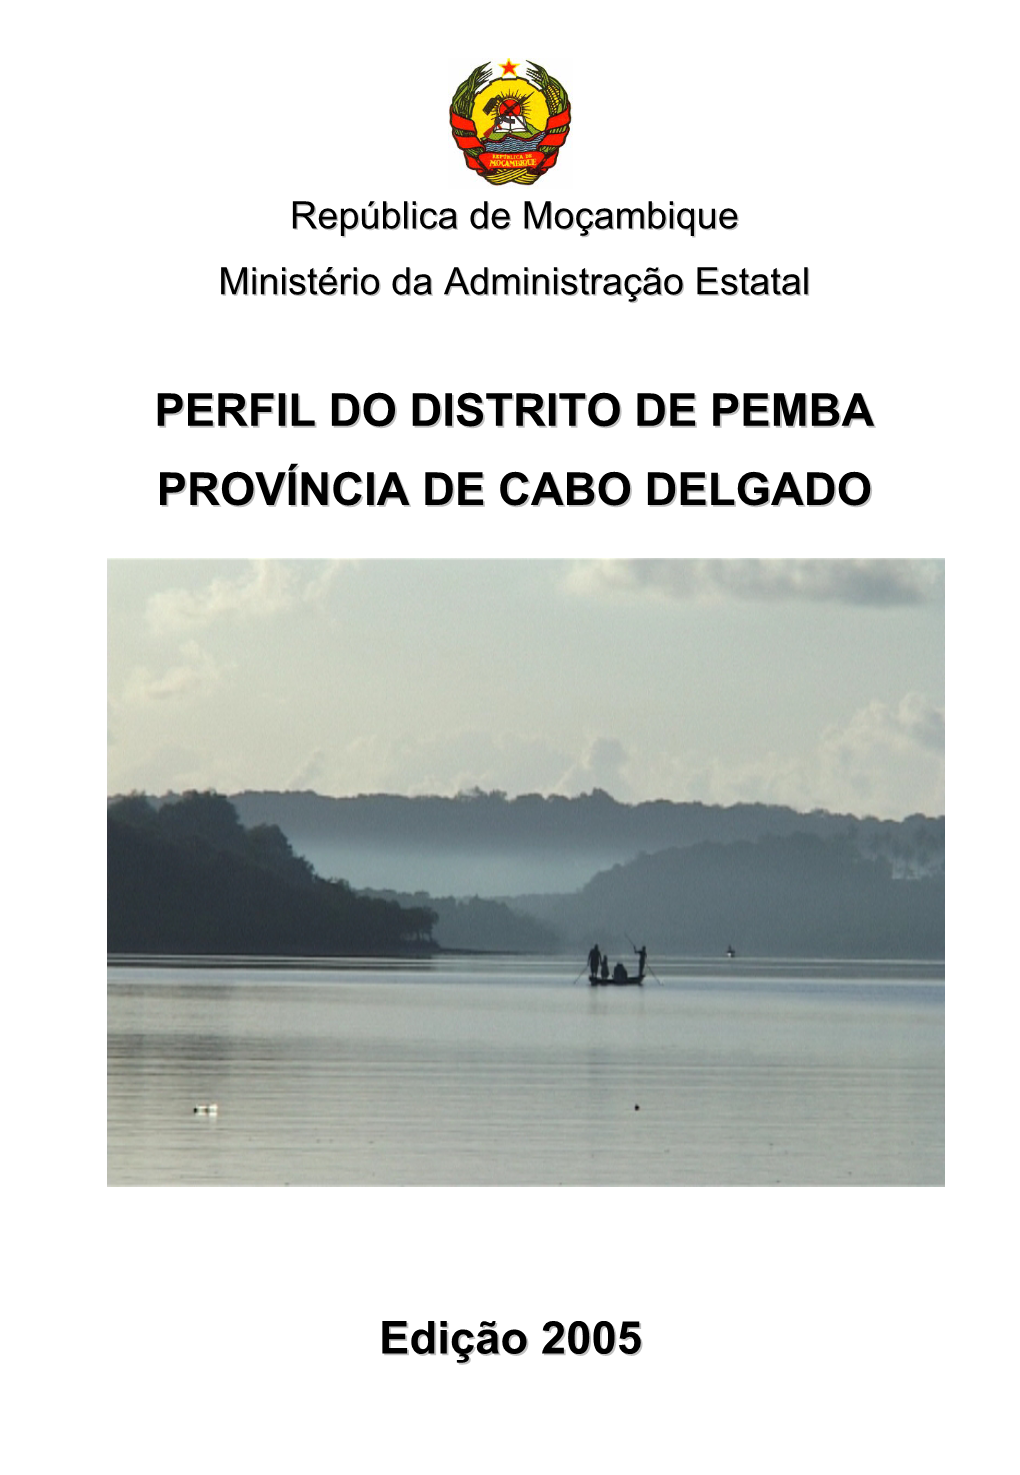 Edição 2005 PERFIL DO DISTRITO DE PEMBA PROVÍNCIA DE CABO